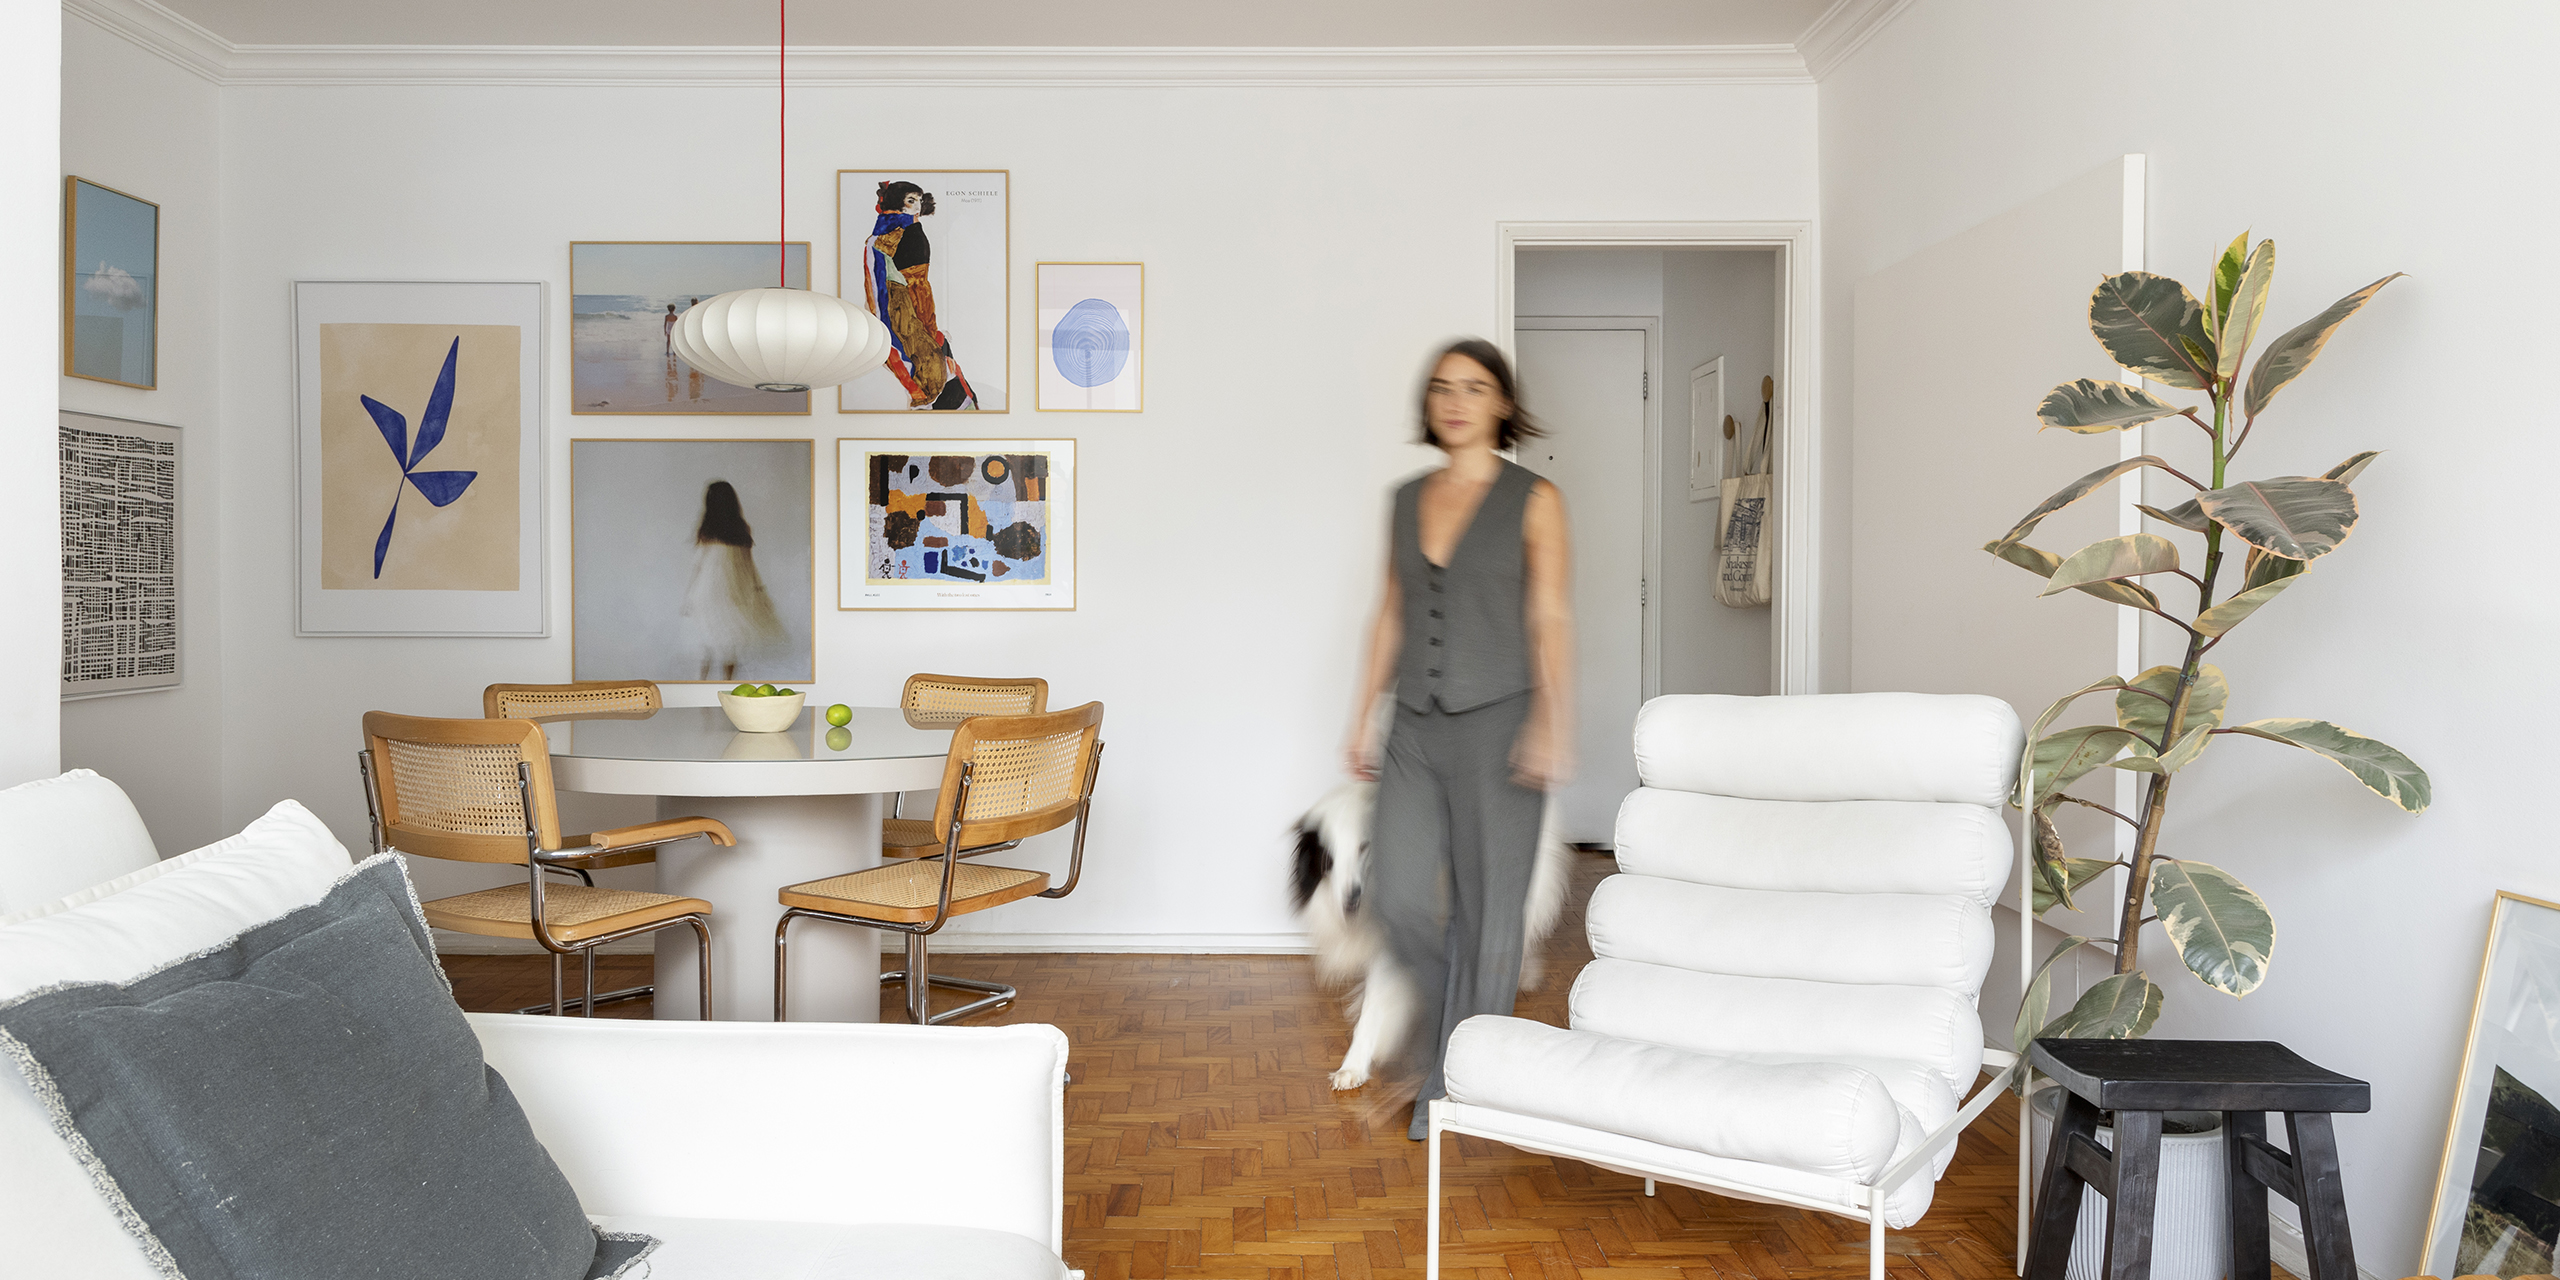 Apartamento acolhedor com decoração minimalista e parede de quadros da BOEMI